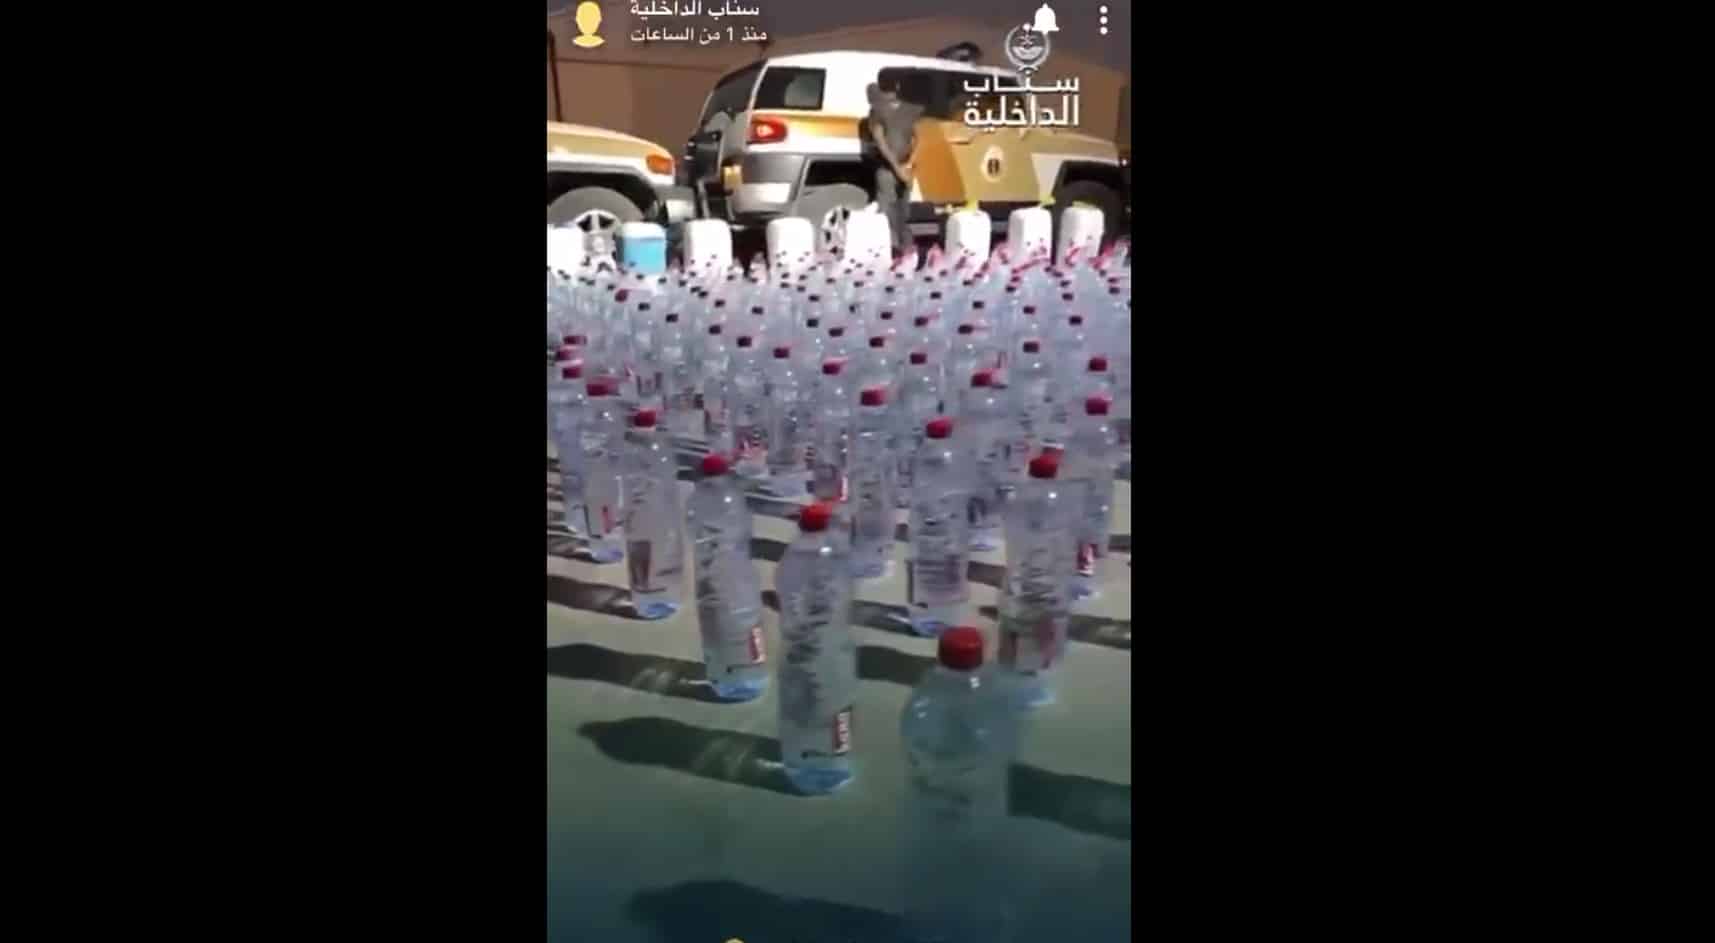 فيديو سناب الداخلية لضبط 1056 قارورة مسكرات بحوزة إثيوبي في الرياض